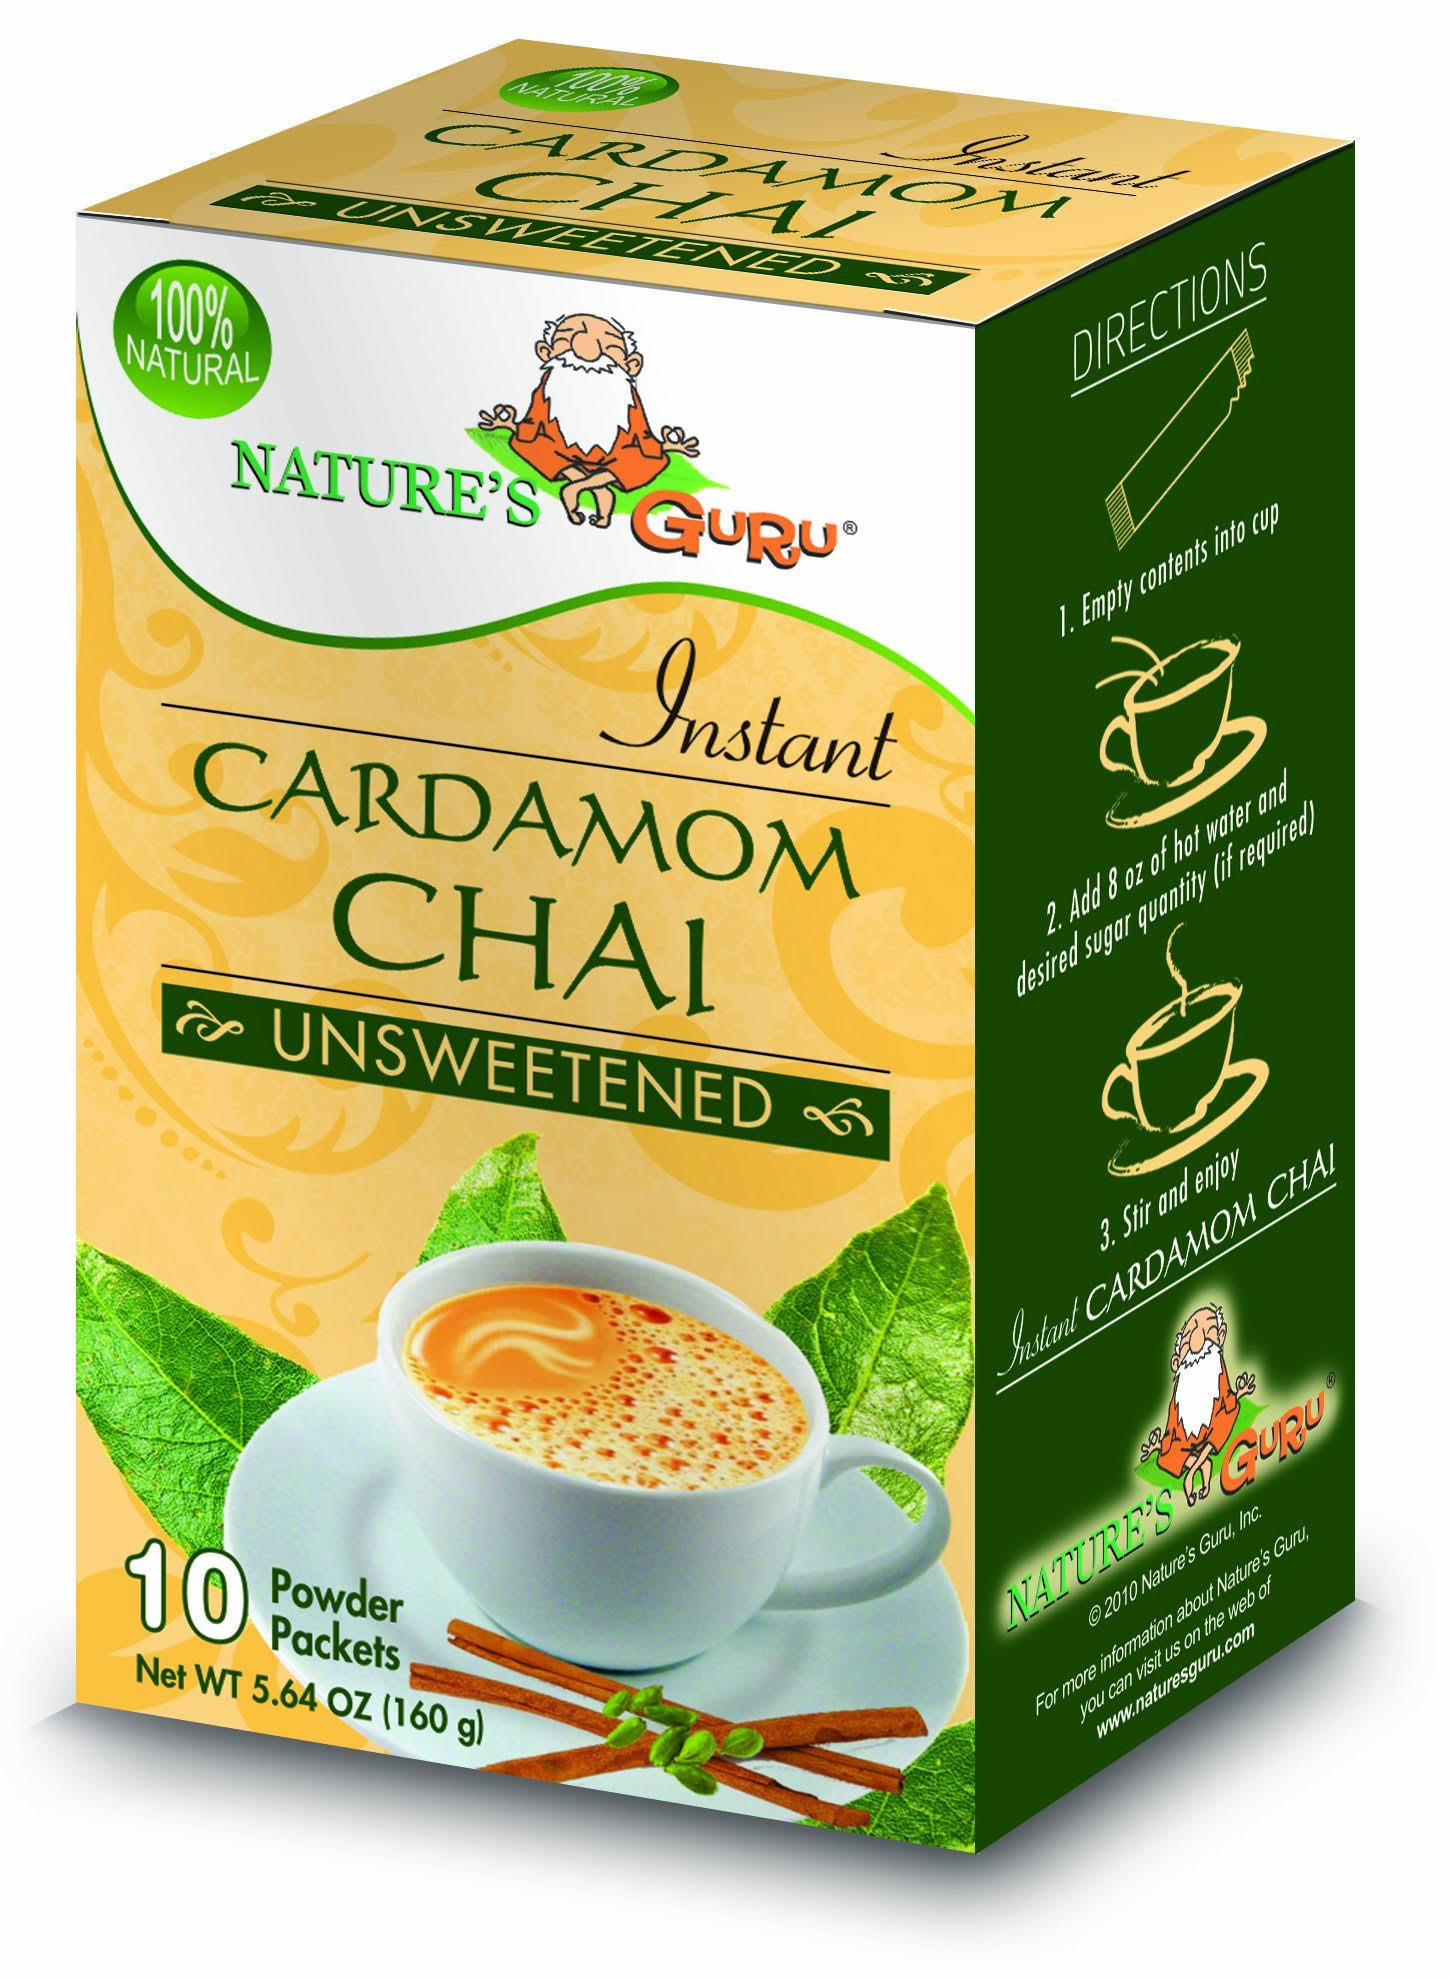 Nature's Guru Instant Cardamom Chai - Unsweetened | 10 Packets